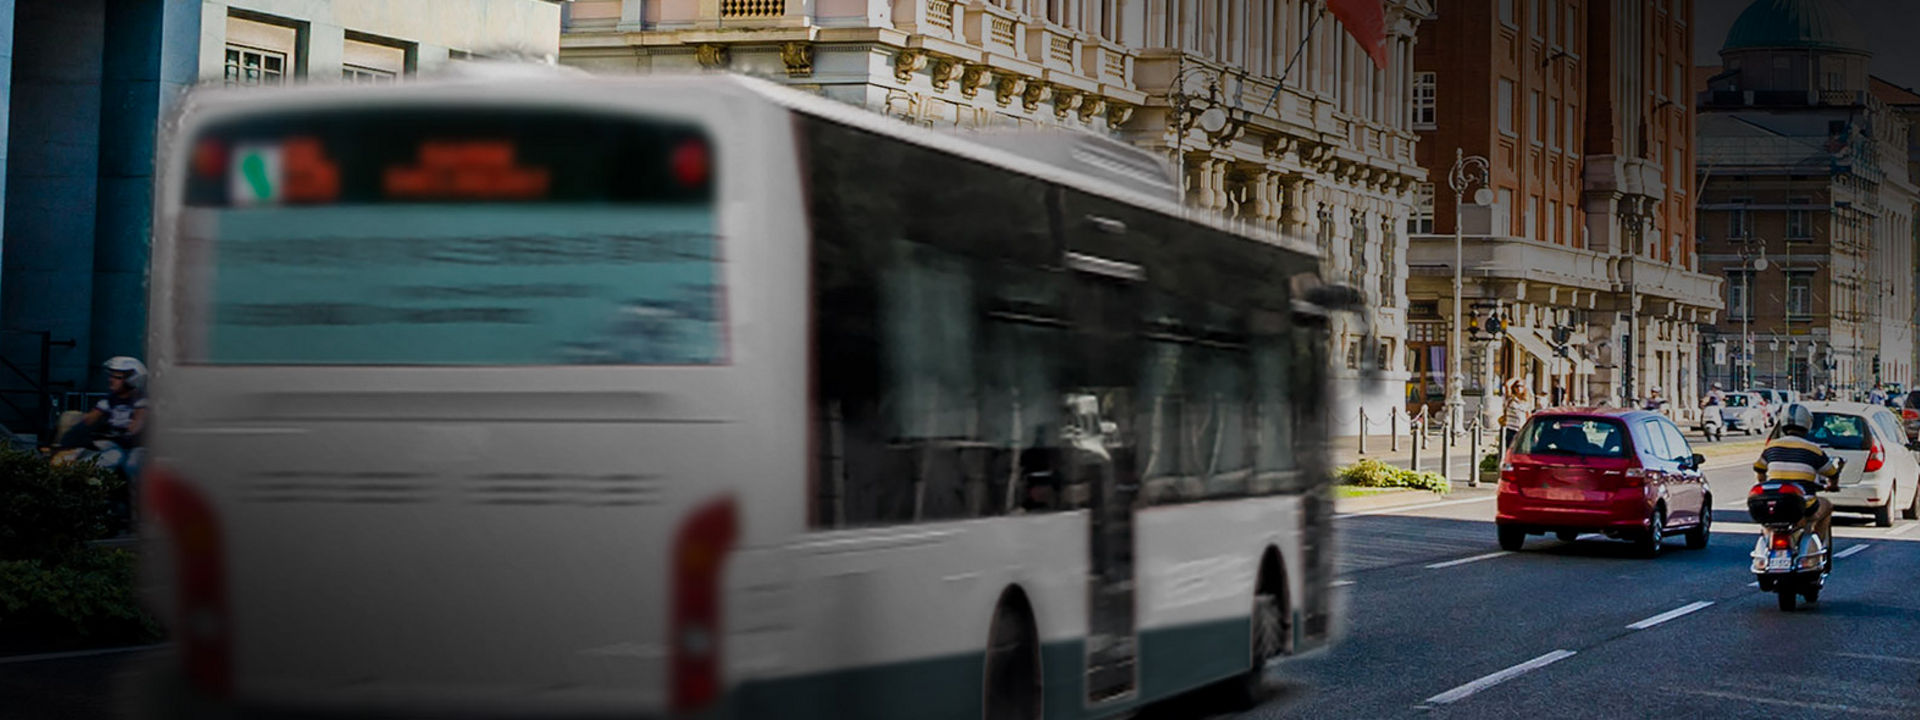 Obrázek ukazuje zadní část autobusu s pneumatikami Bridgestone pro městské autobusy jedoucího v centru města